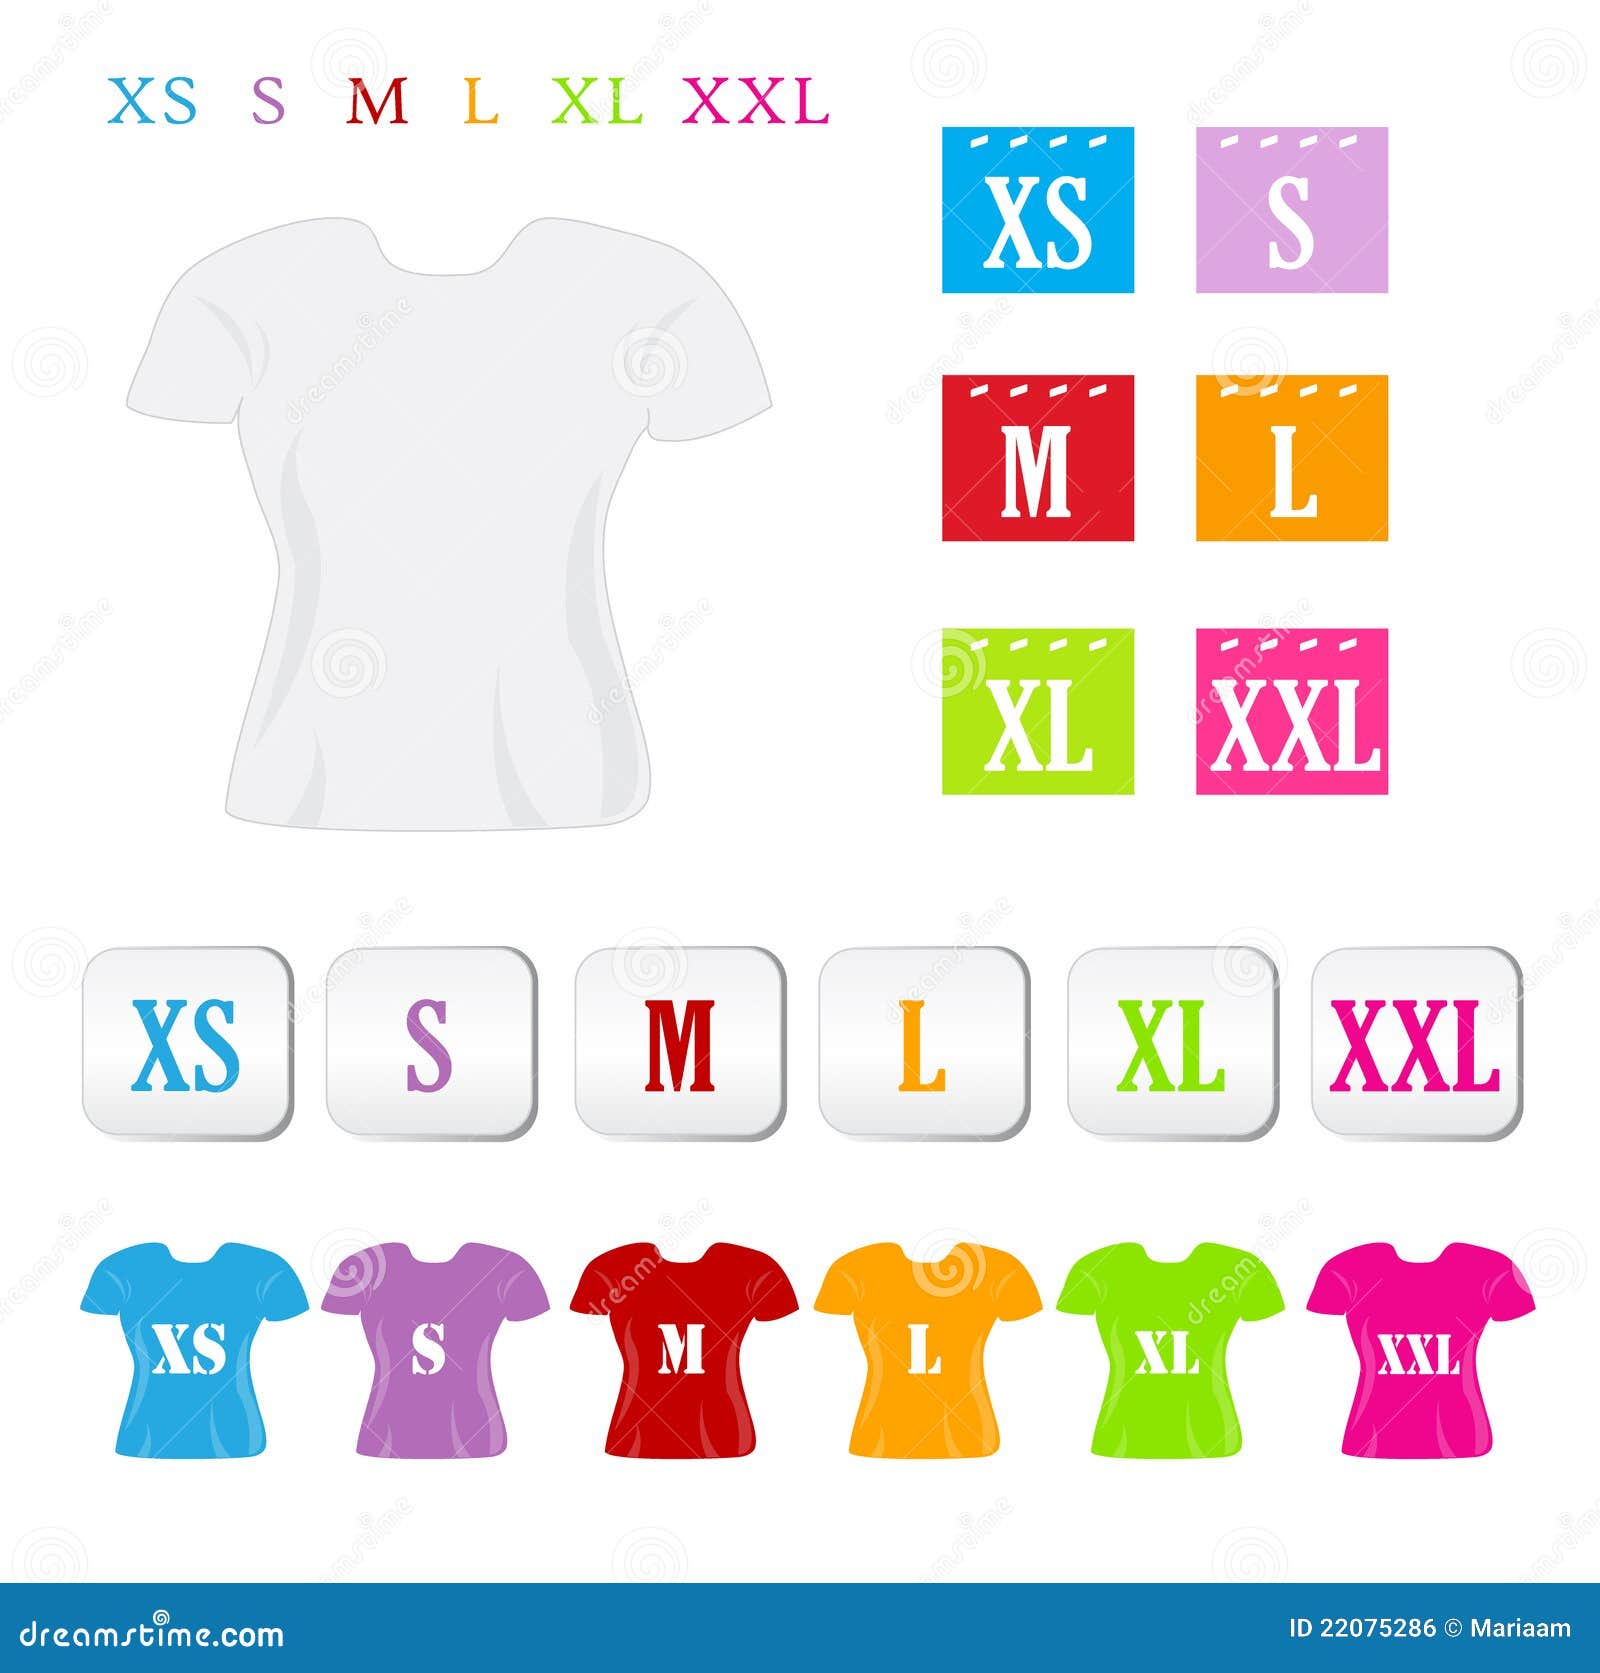 Tamanhos da roupa. Uma variedade de símbolos coloridos do tamanho da roupa.